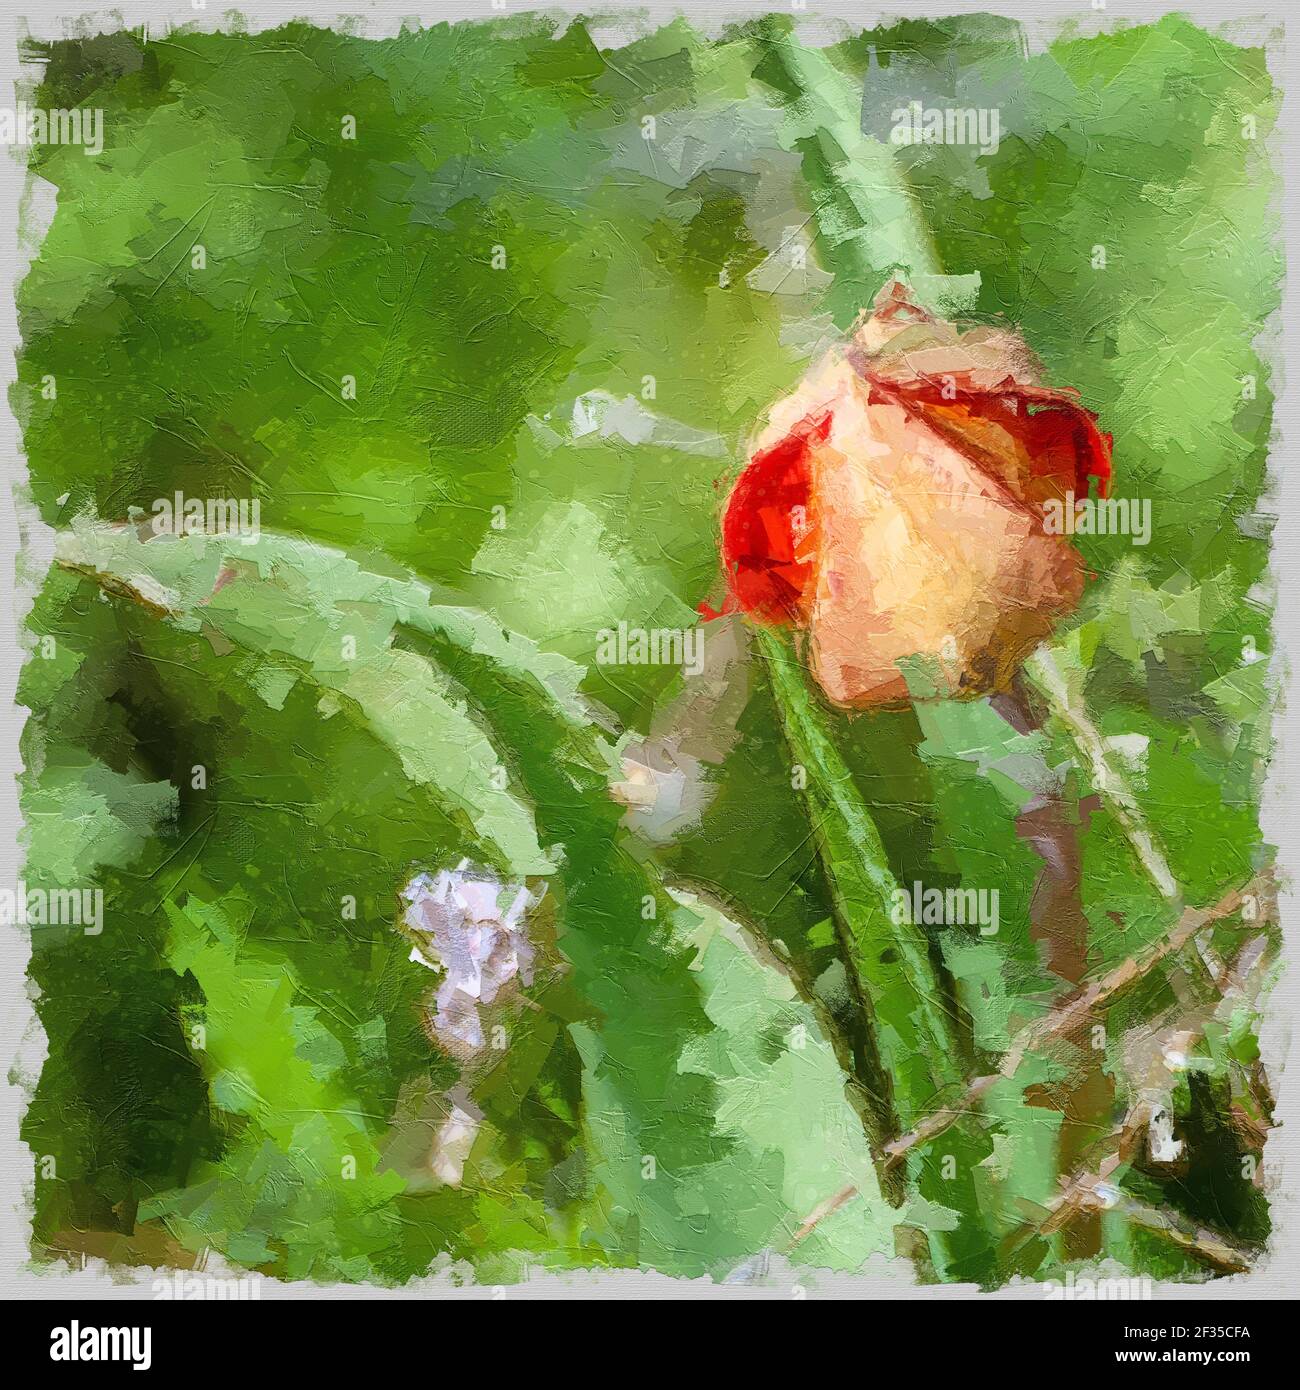 Image numériquement rehaussée d'une tulipe de montagne sauvage (Tulipa agenensis) bouton de fleur Banque D'Images